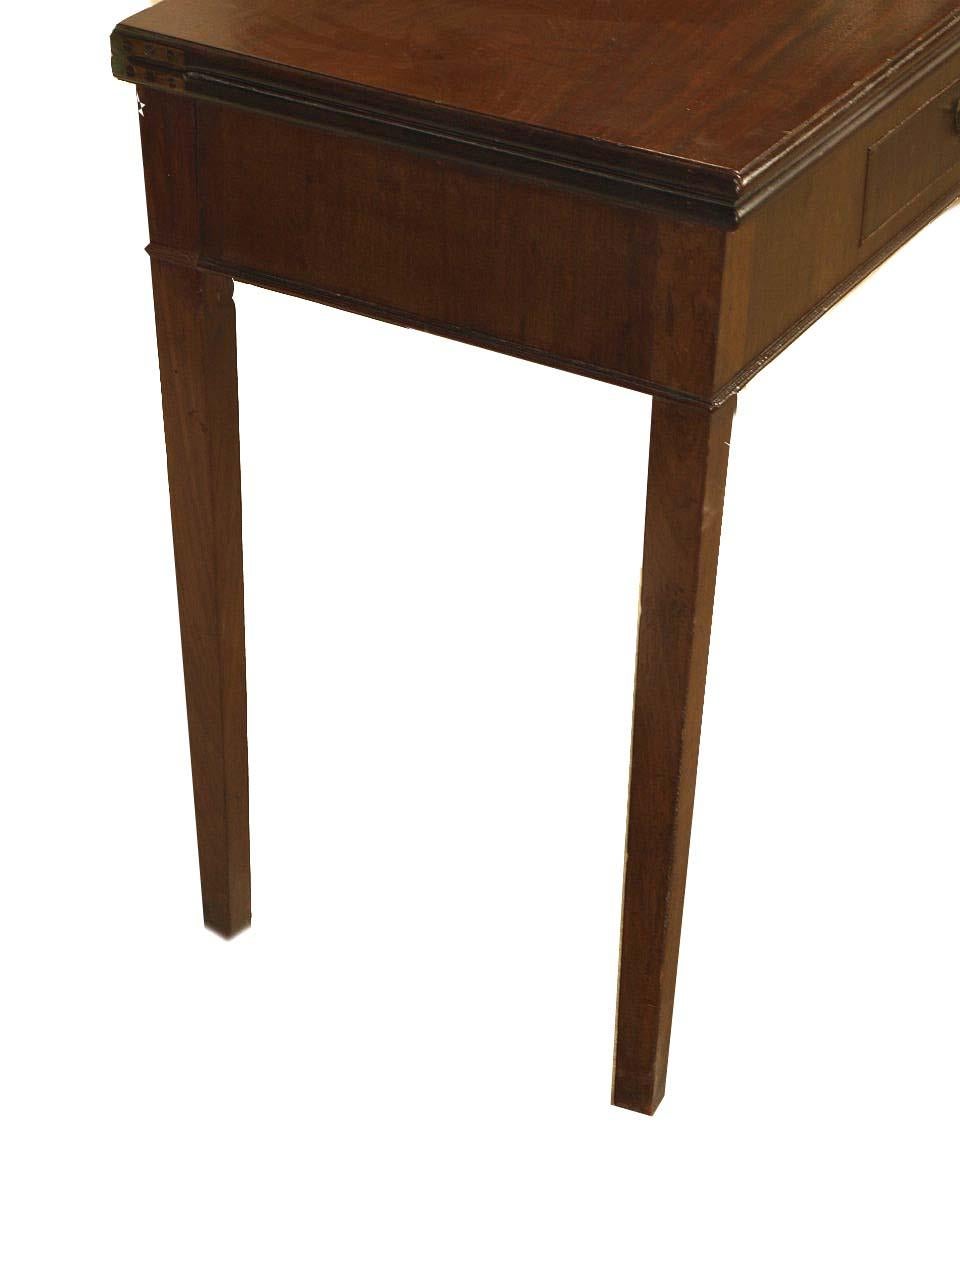 Hepplewhite Spieltisch aus Mahagoni, die klappbare Platte lässt sich umklappen und wird vom linken hinteren Bein getragen, das ausschwenkt. Schöne Mahagoni-Spielfläche über einer einzelnen Schublade mit originalem Schwanenhals-Messingzug. Dieser